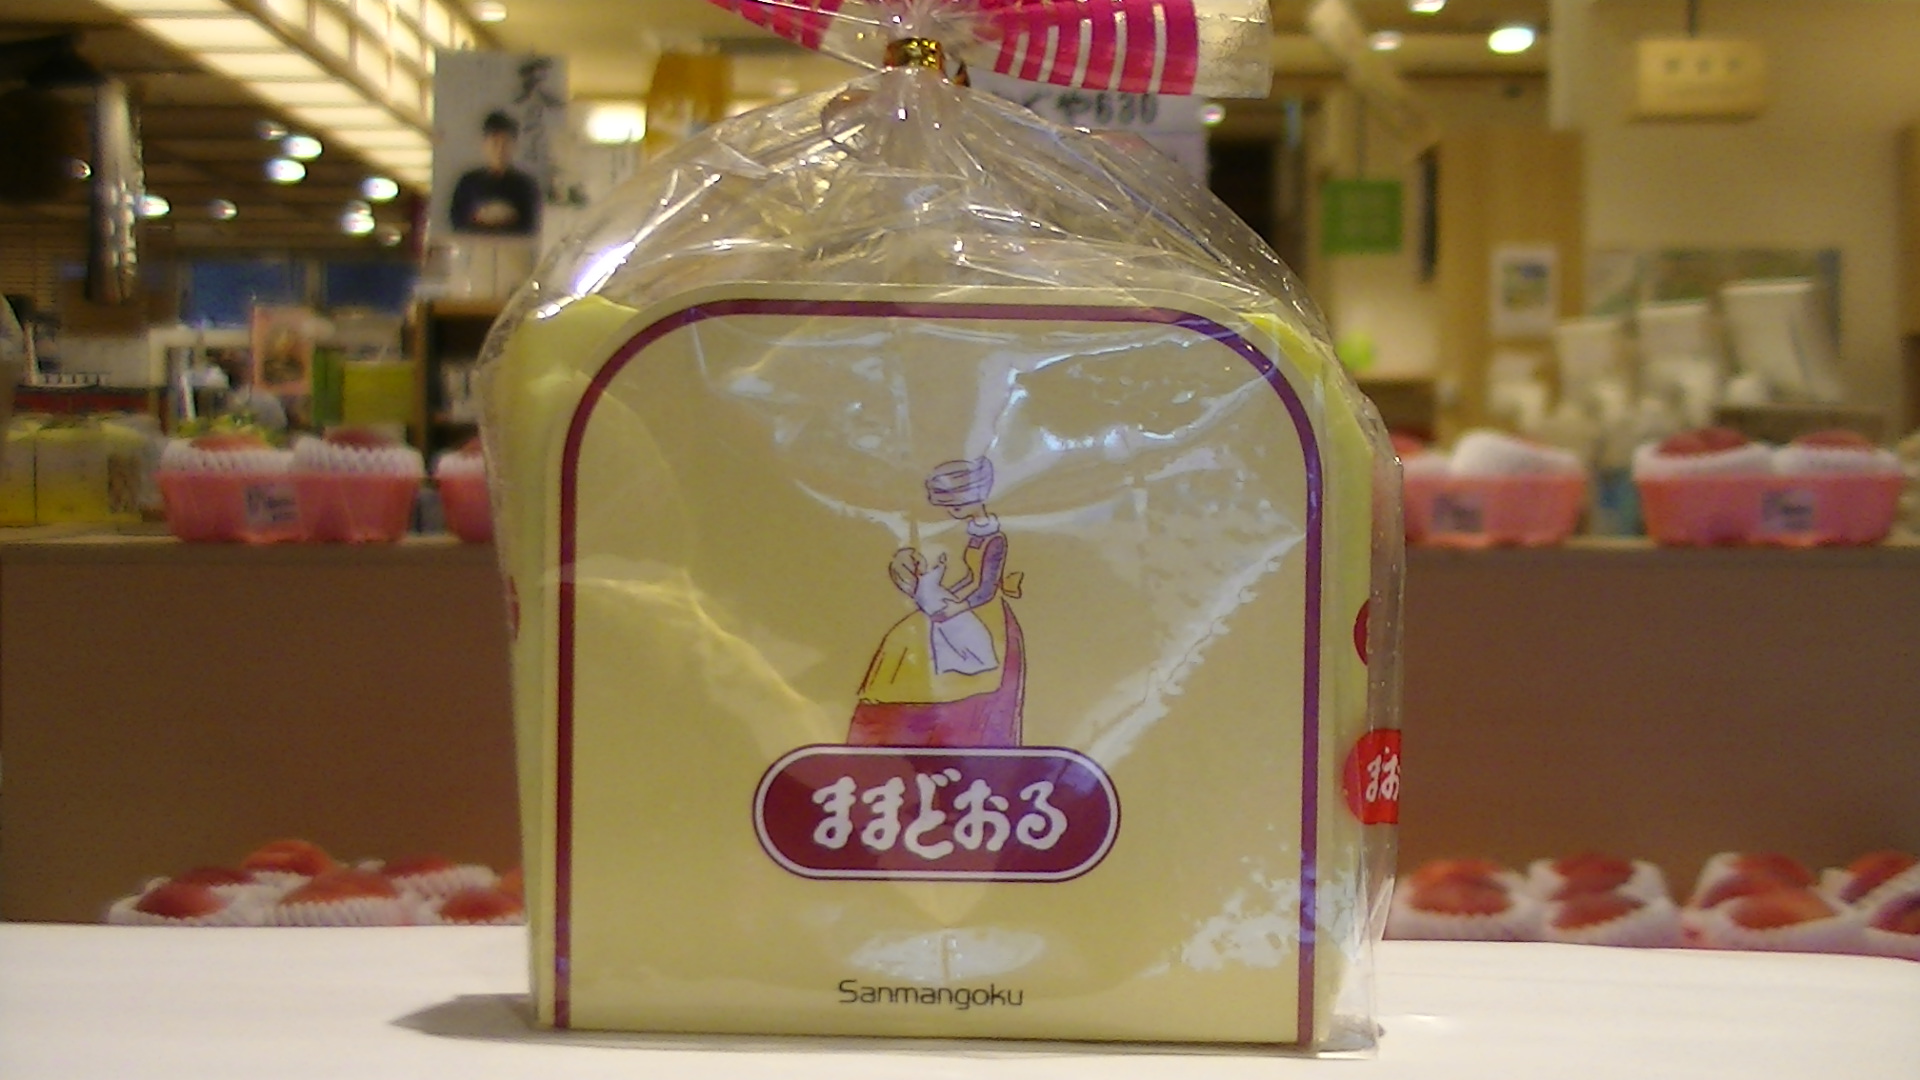 福島県 アンテナショップ ままどおる 若い方に人気の味 東京にある全国のアンテナショップ